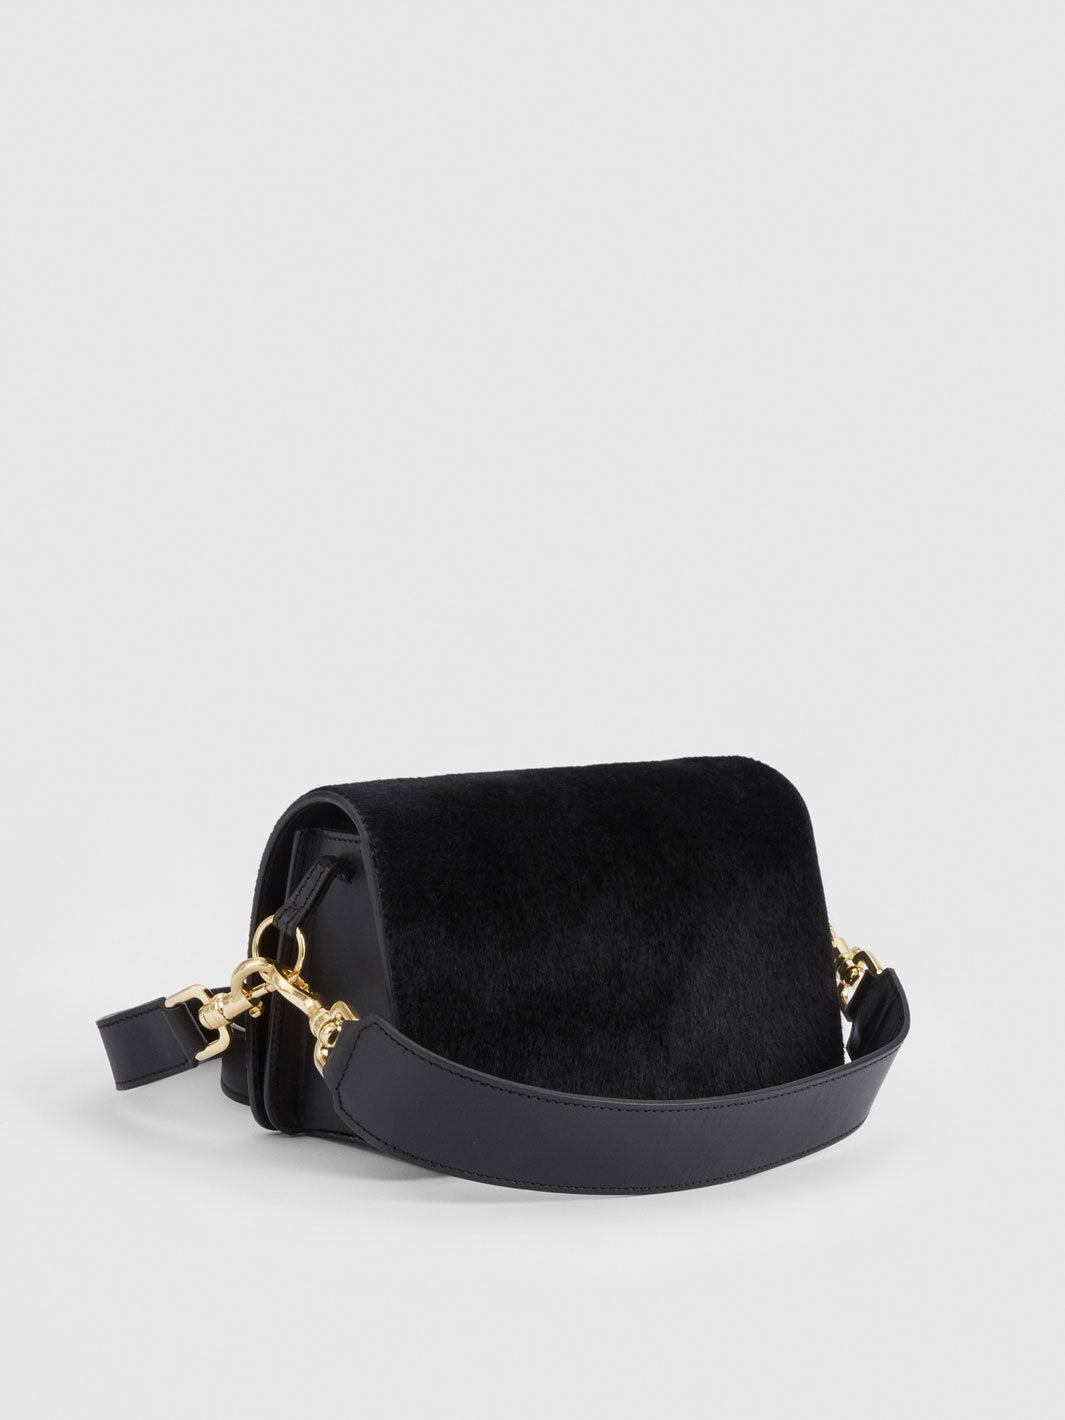 Assisi Black Leather/Pony Shoulder Bag